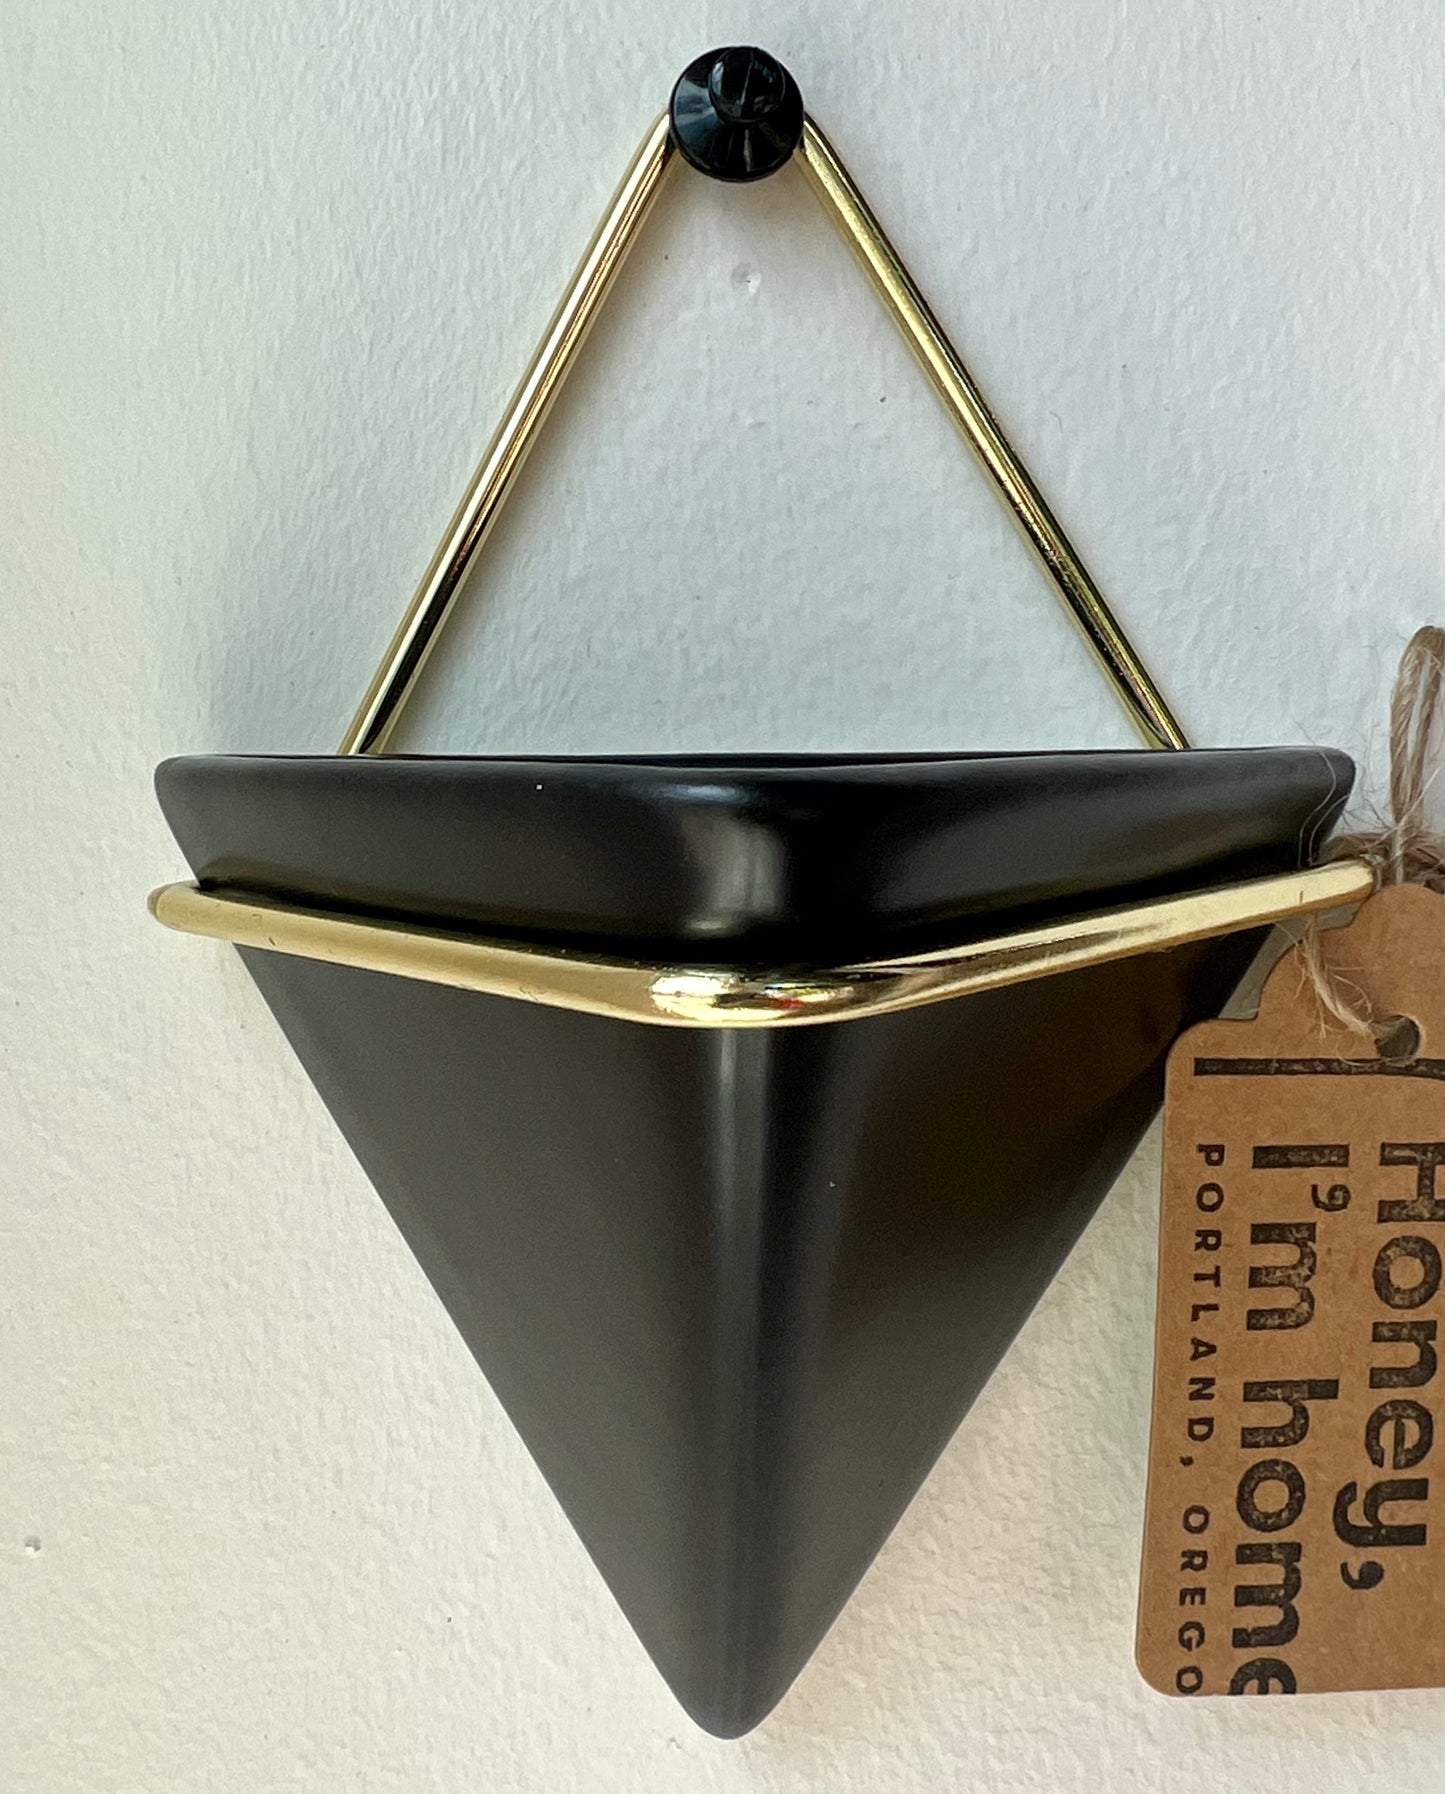 Triangle Ceramic Hanging Vase